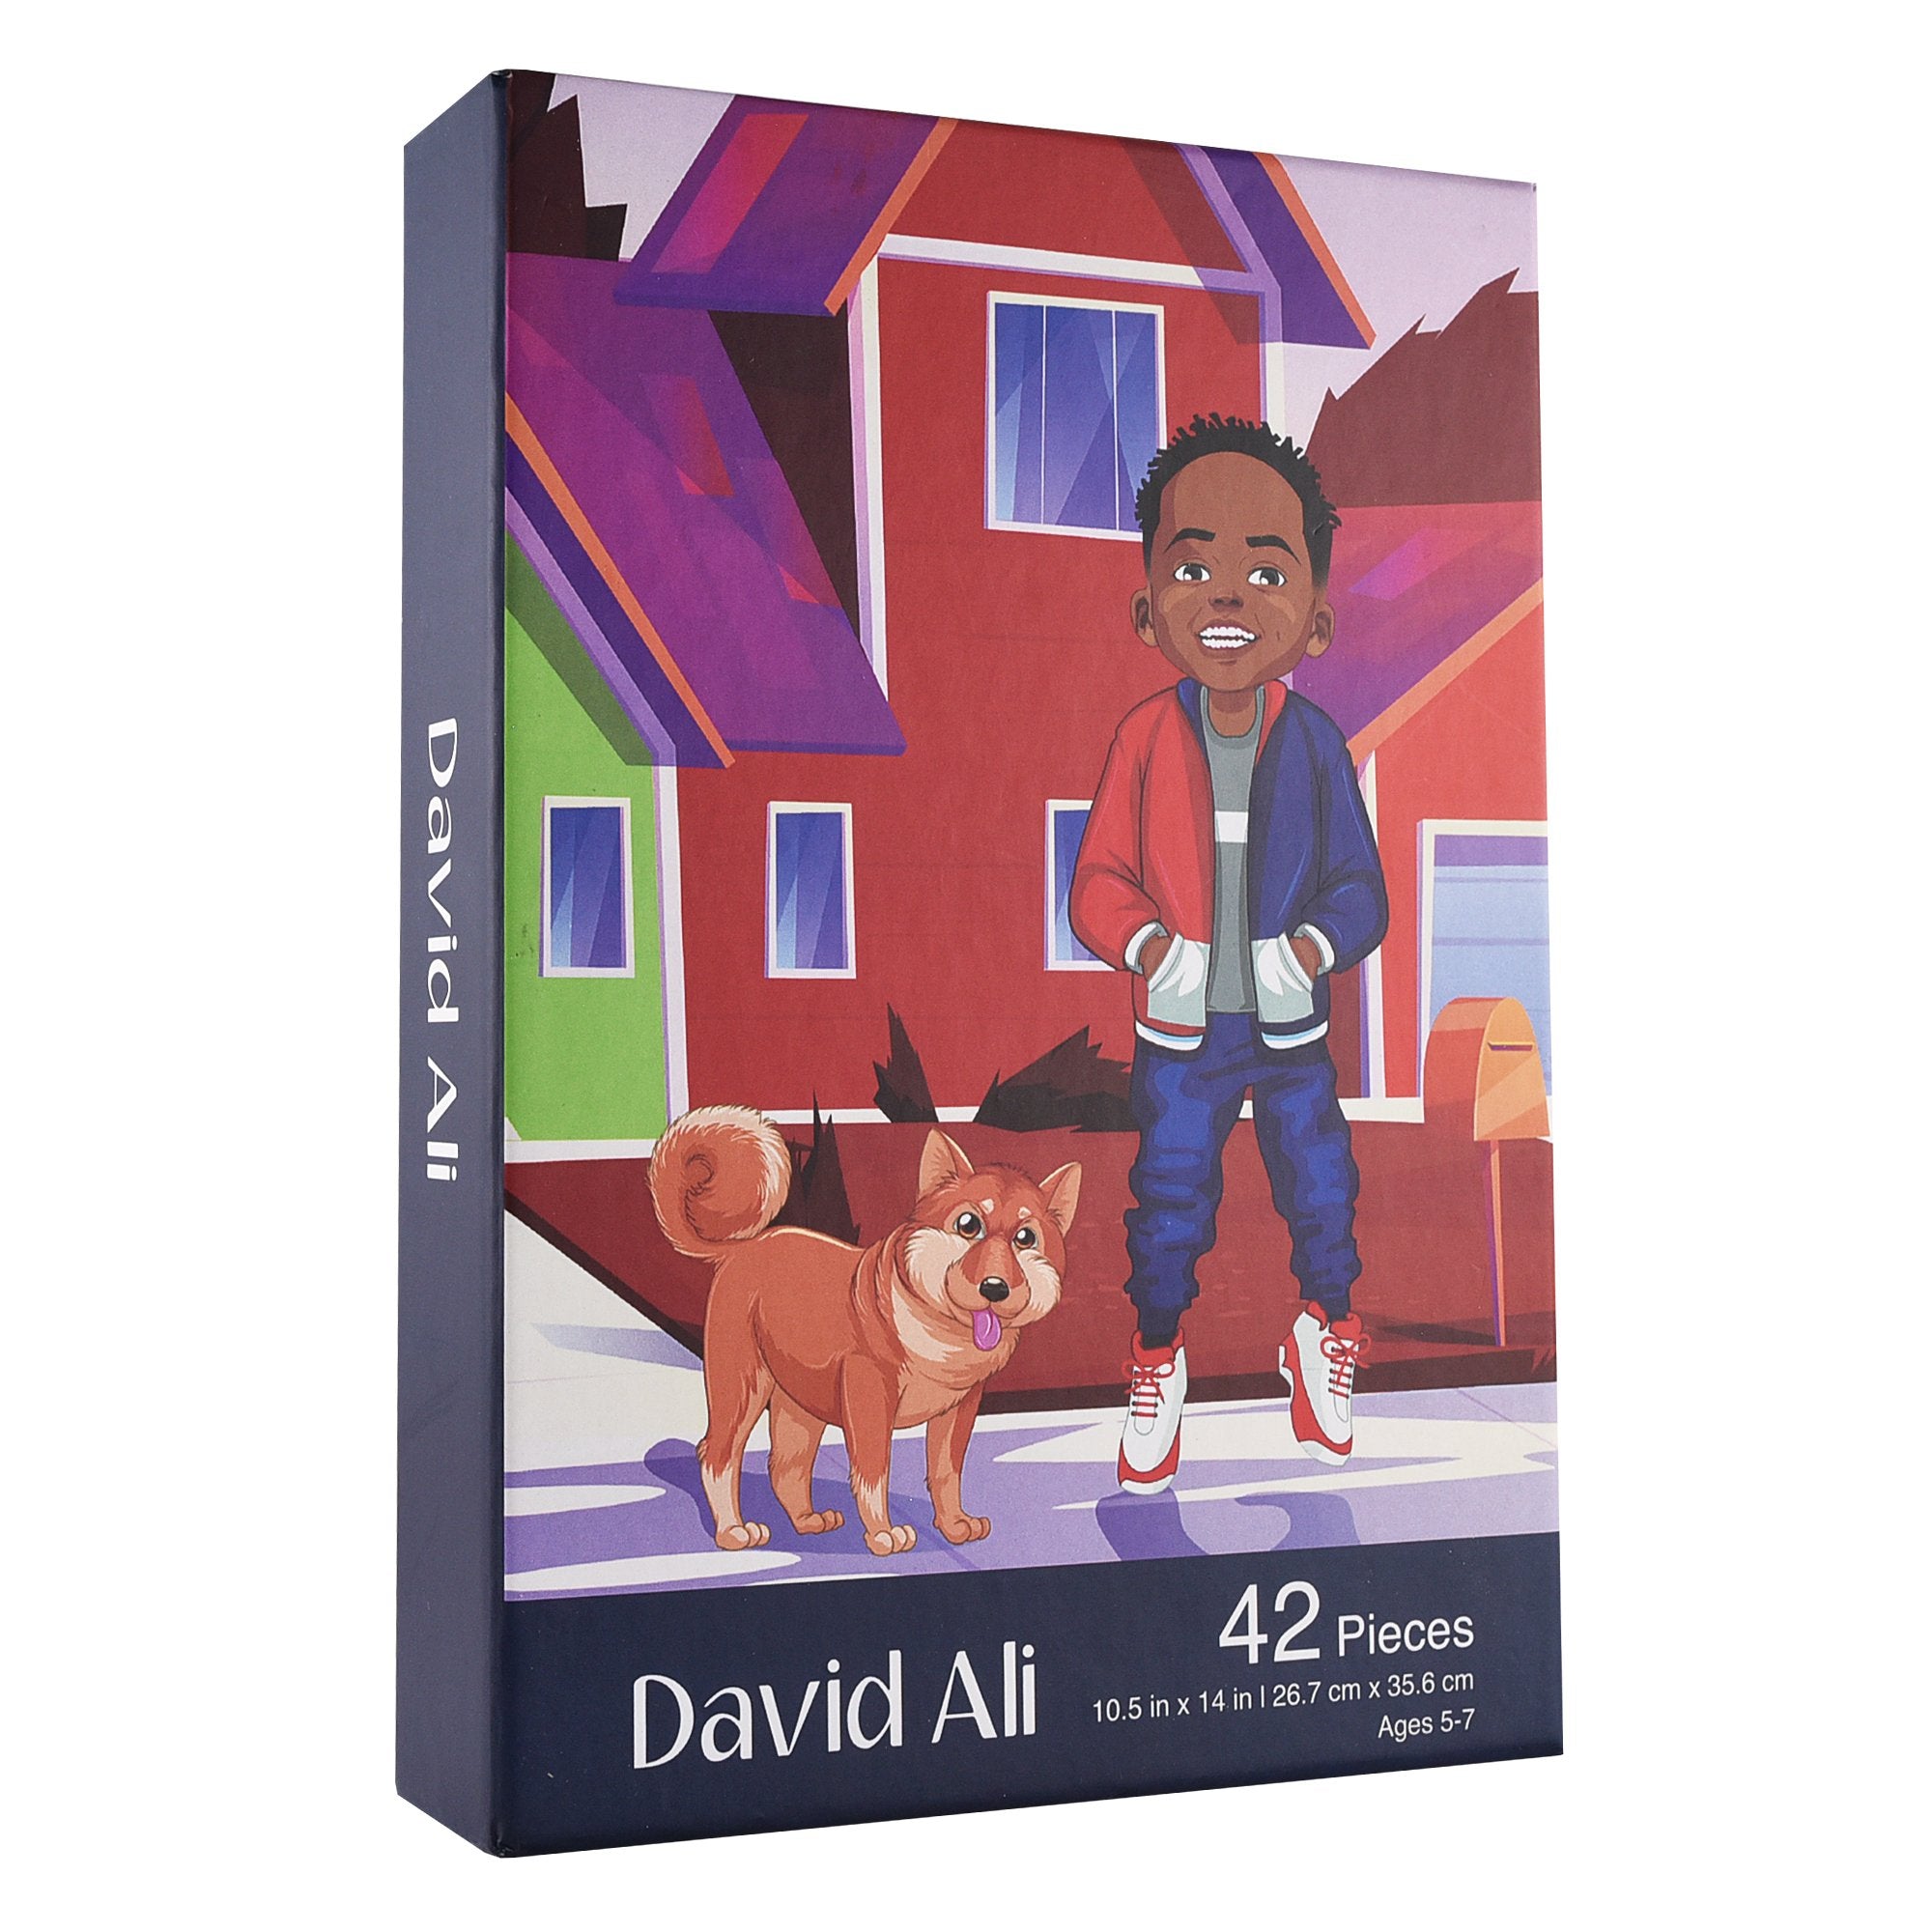 The David Ali Puzzle